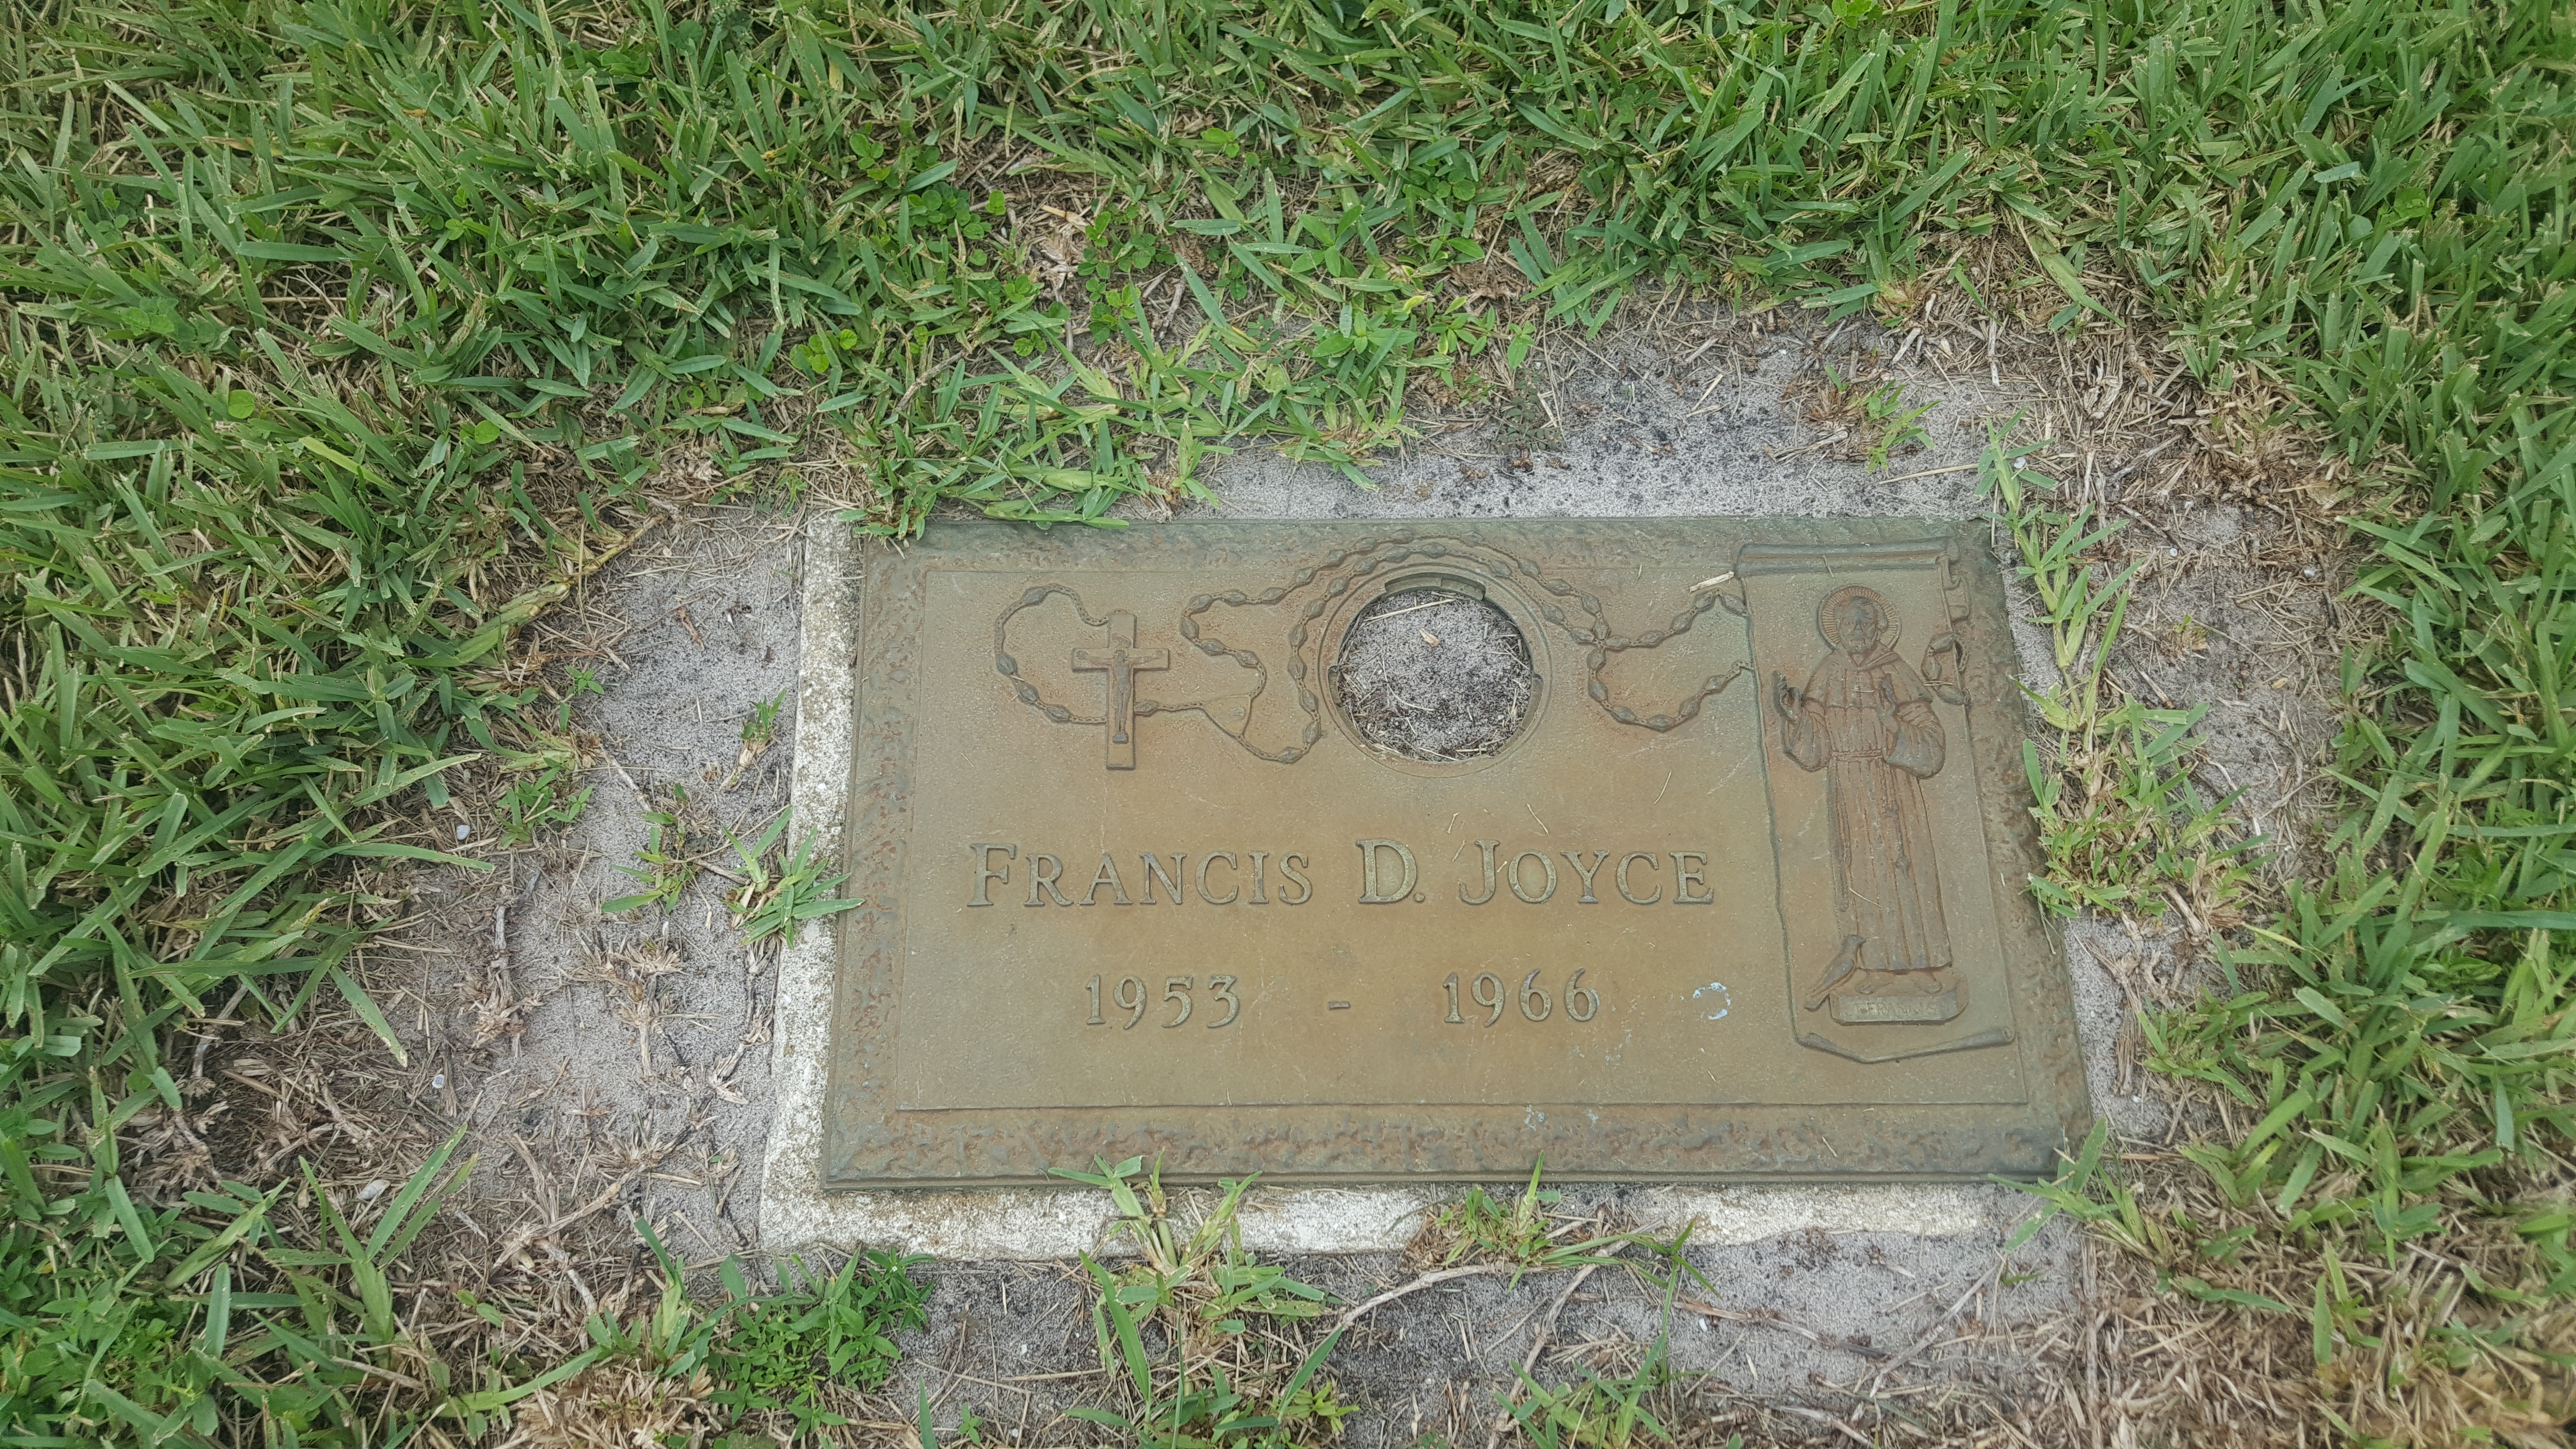 Francis D Joyce